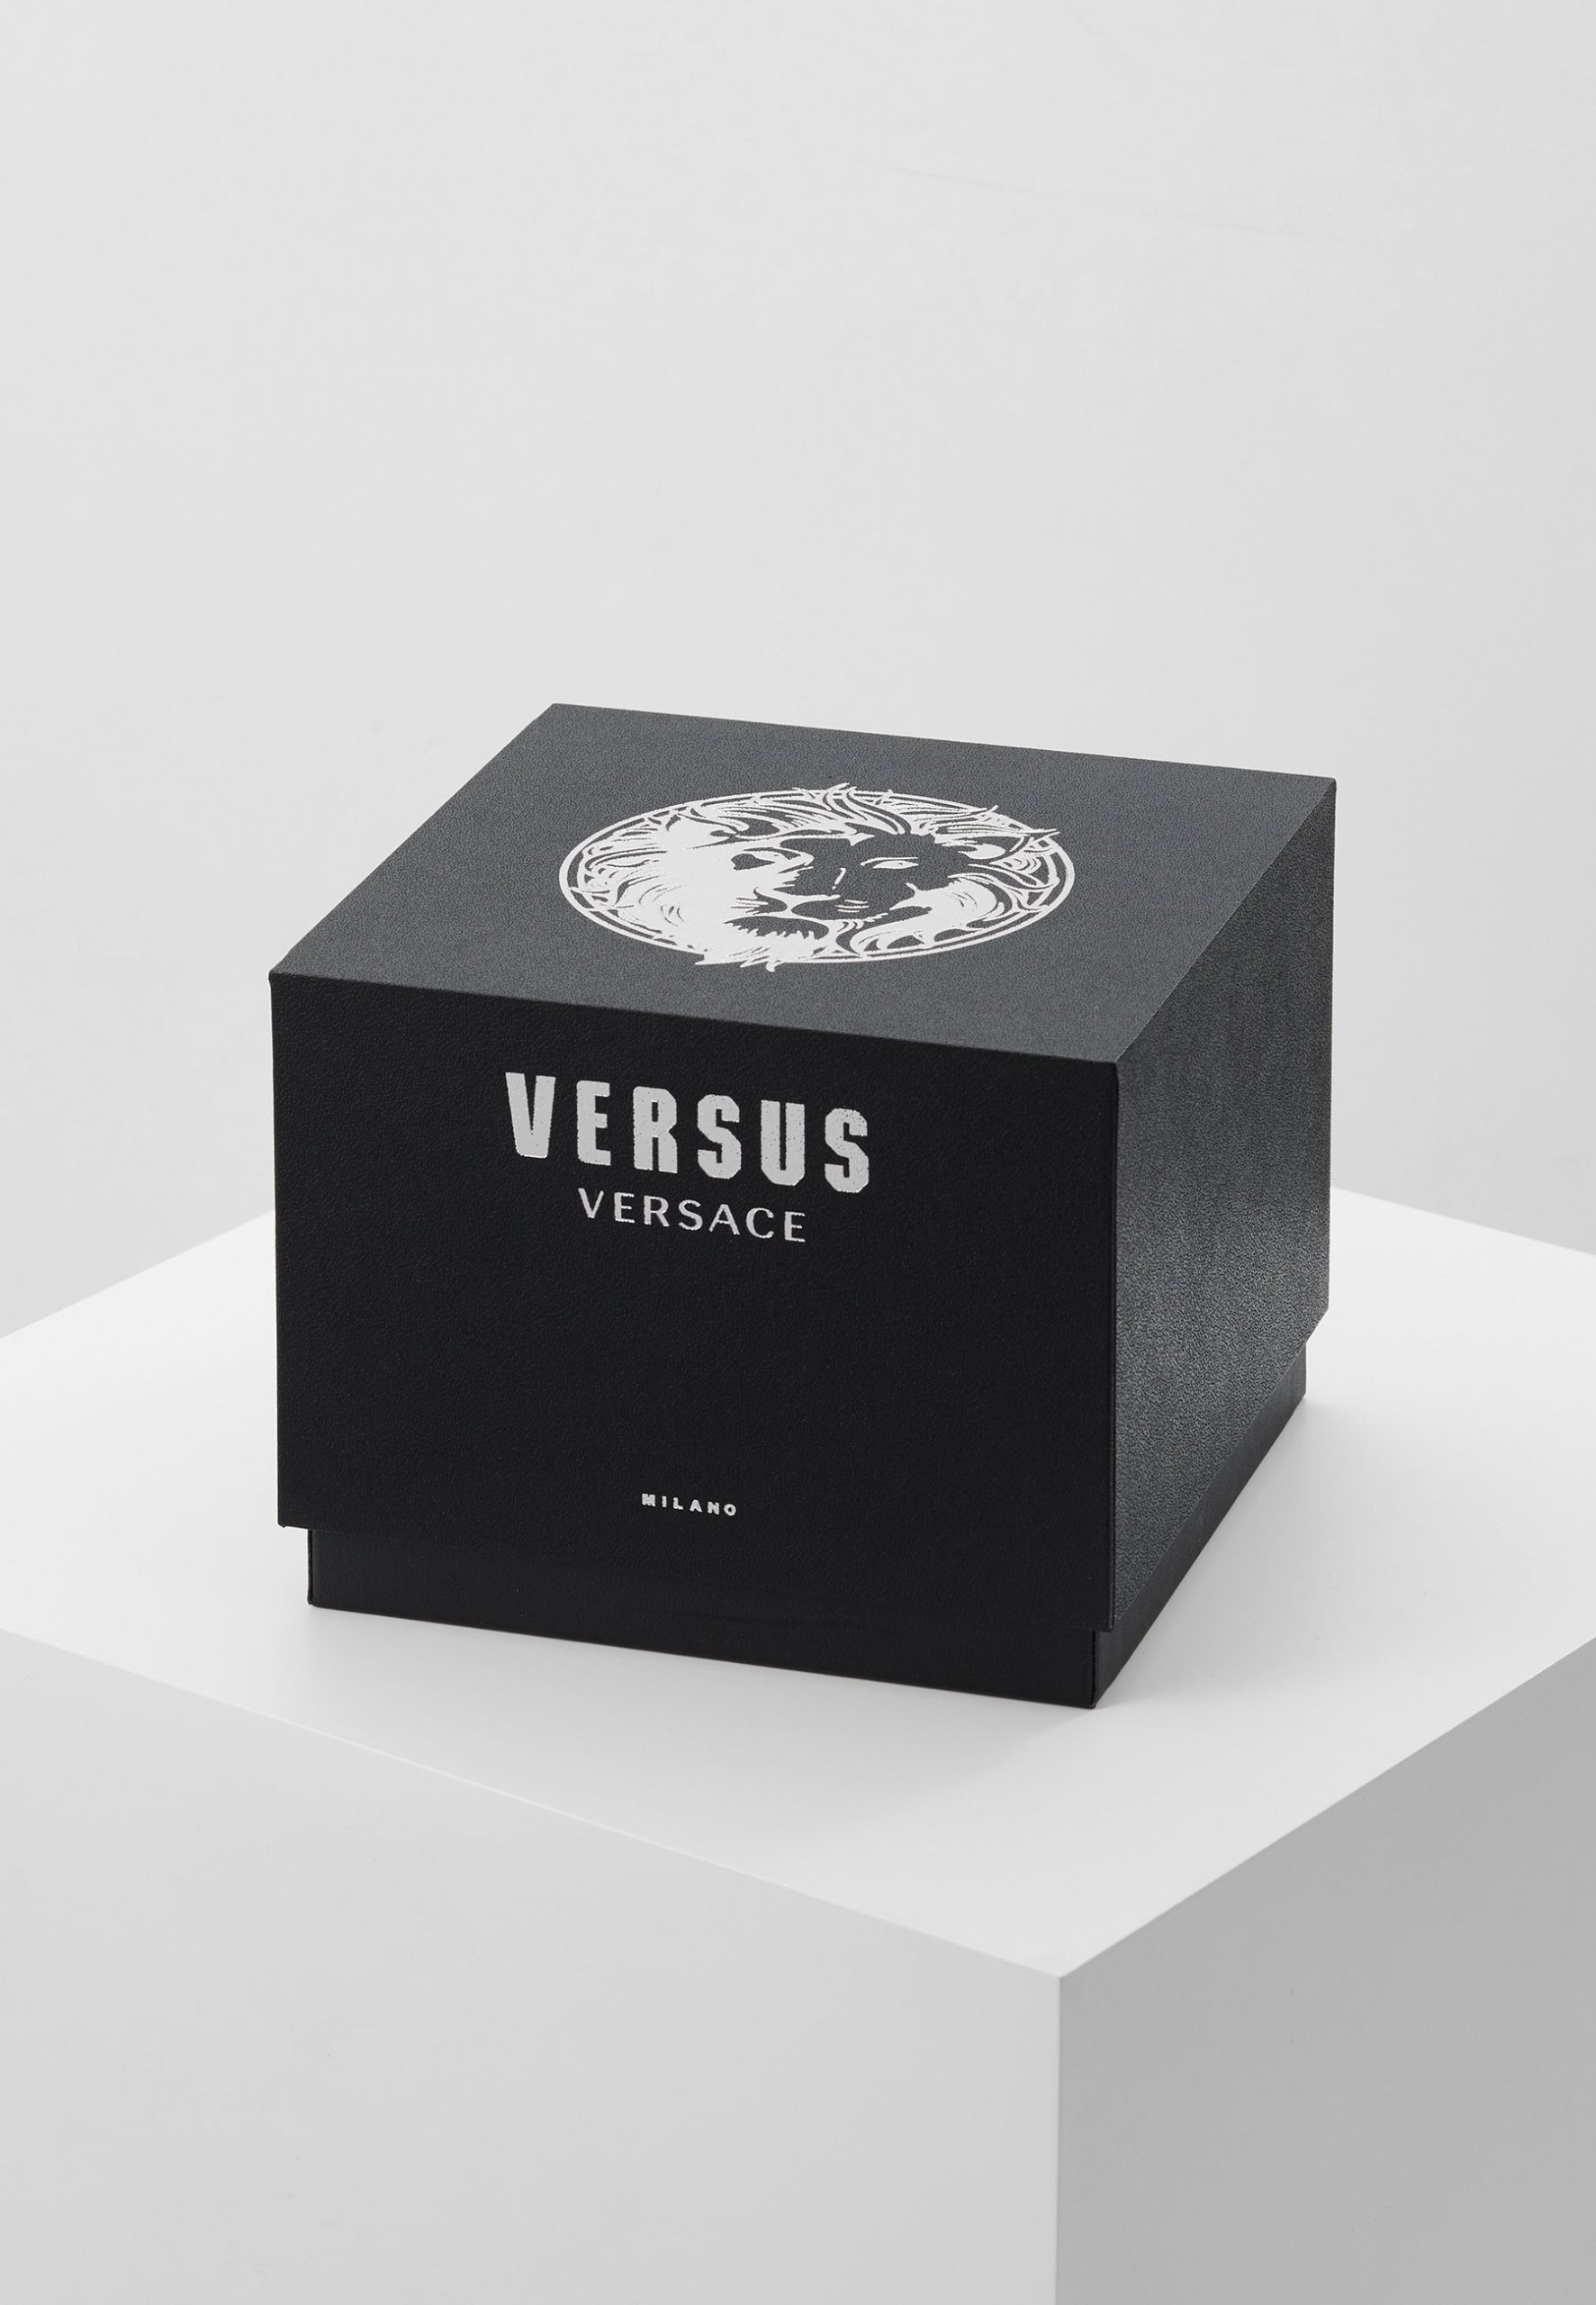 El reloj Versus Versace a mitad de precio ideal para regalar a tu madre